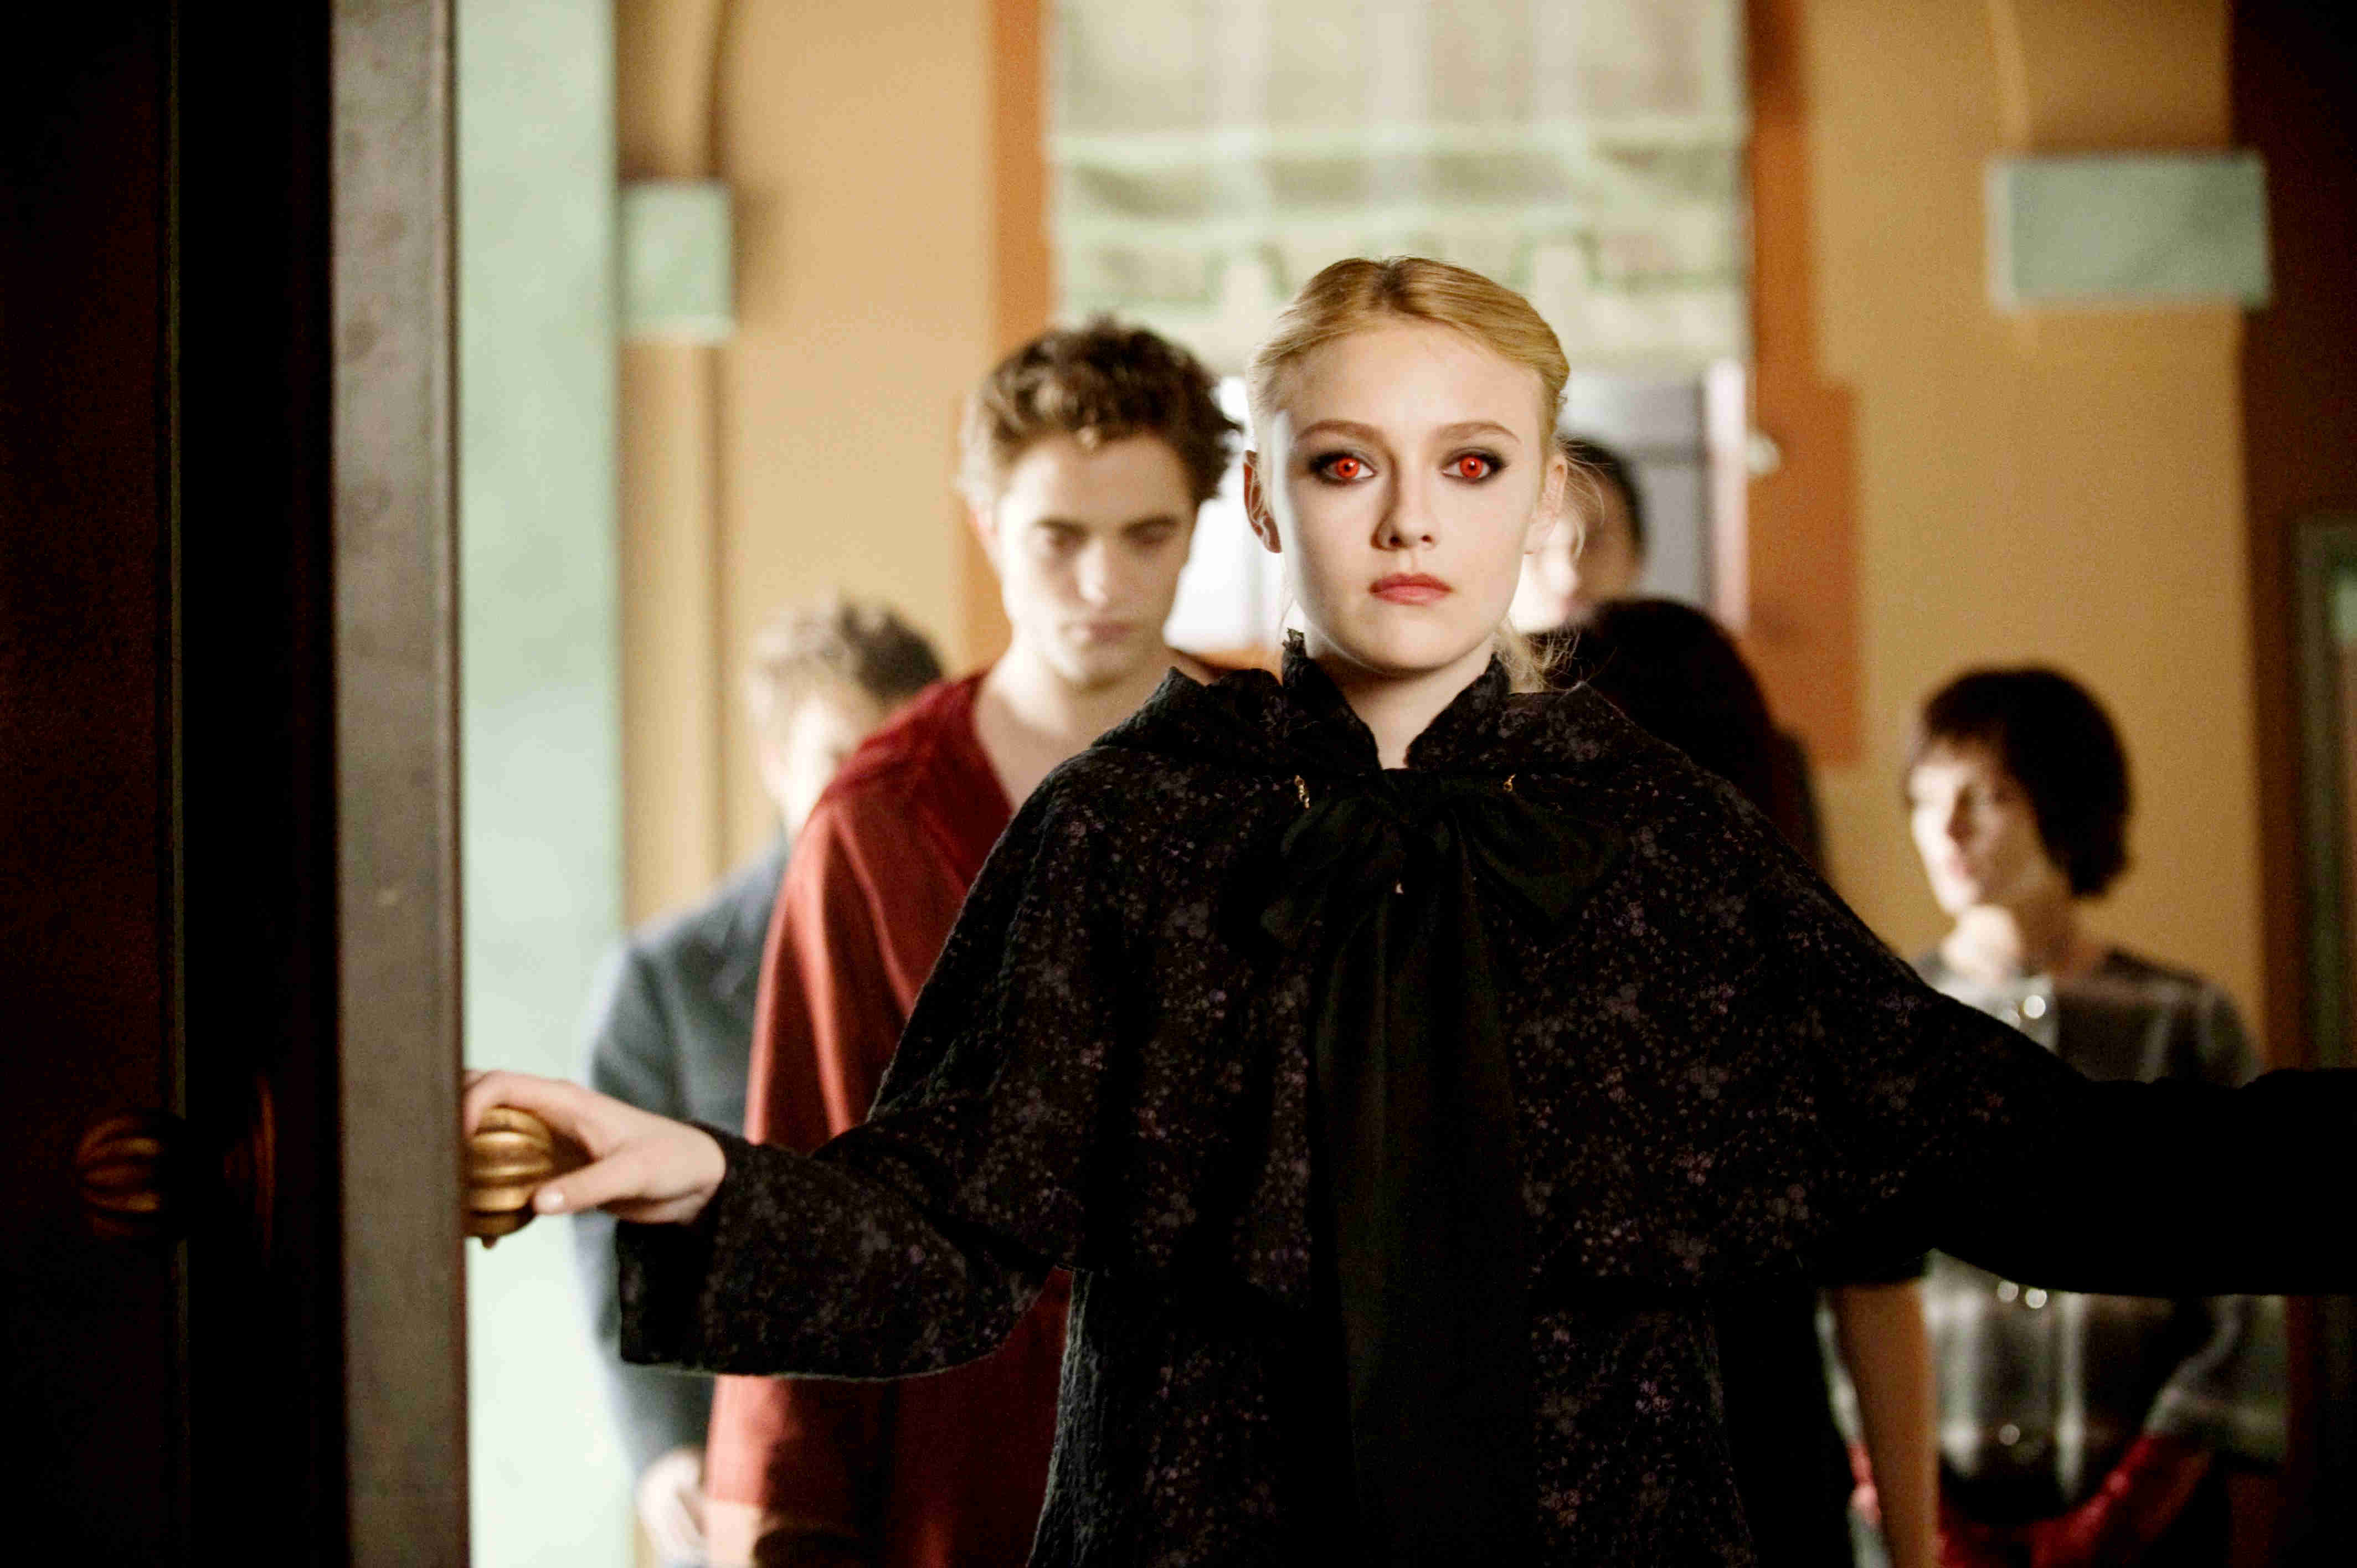 Robert Pattinson, Dakota Fanning and Ashley Greene in Summit Entertainment's The Twilight Saga's New Moon (2009)